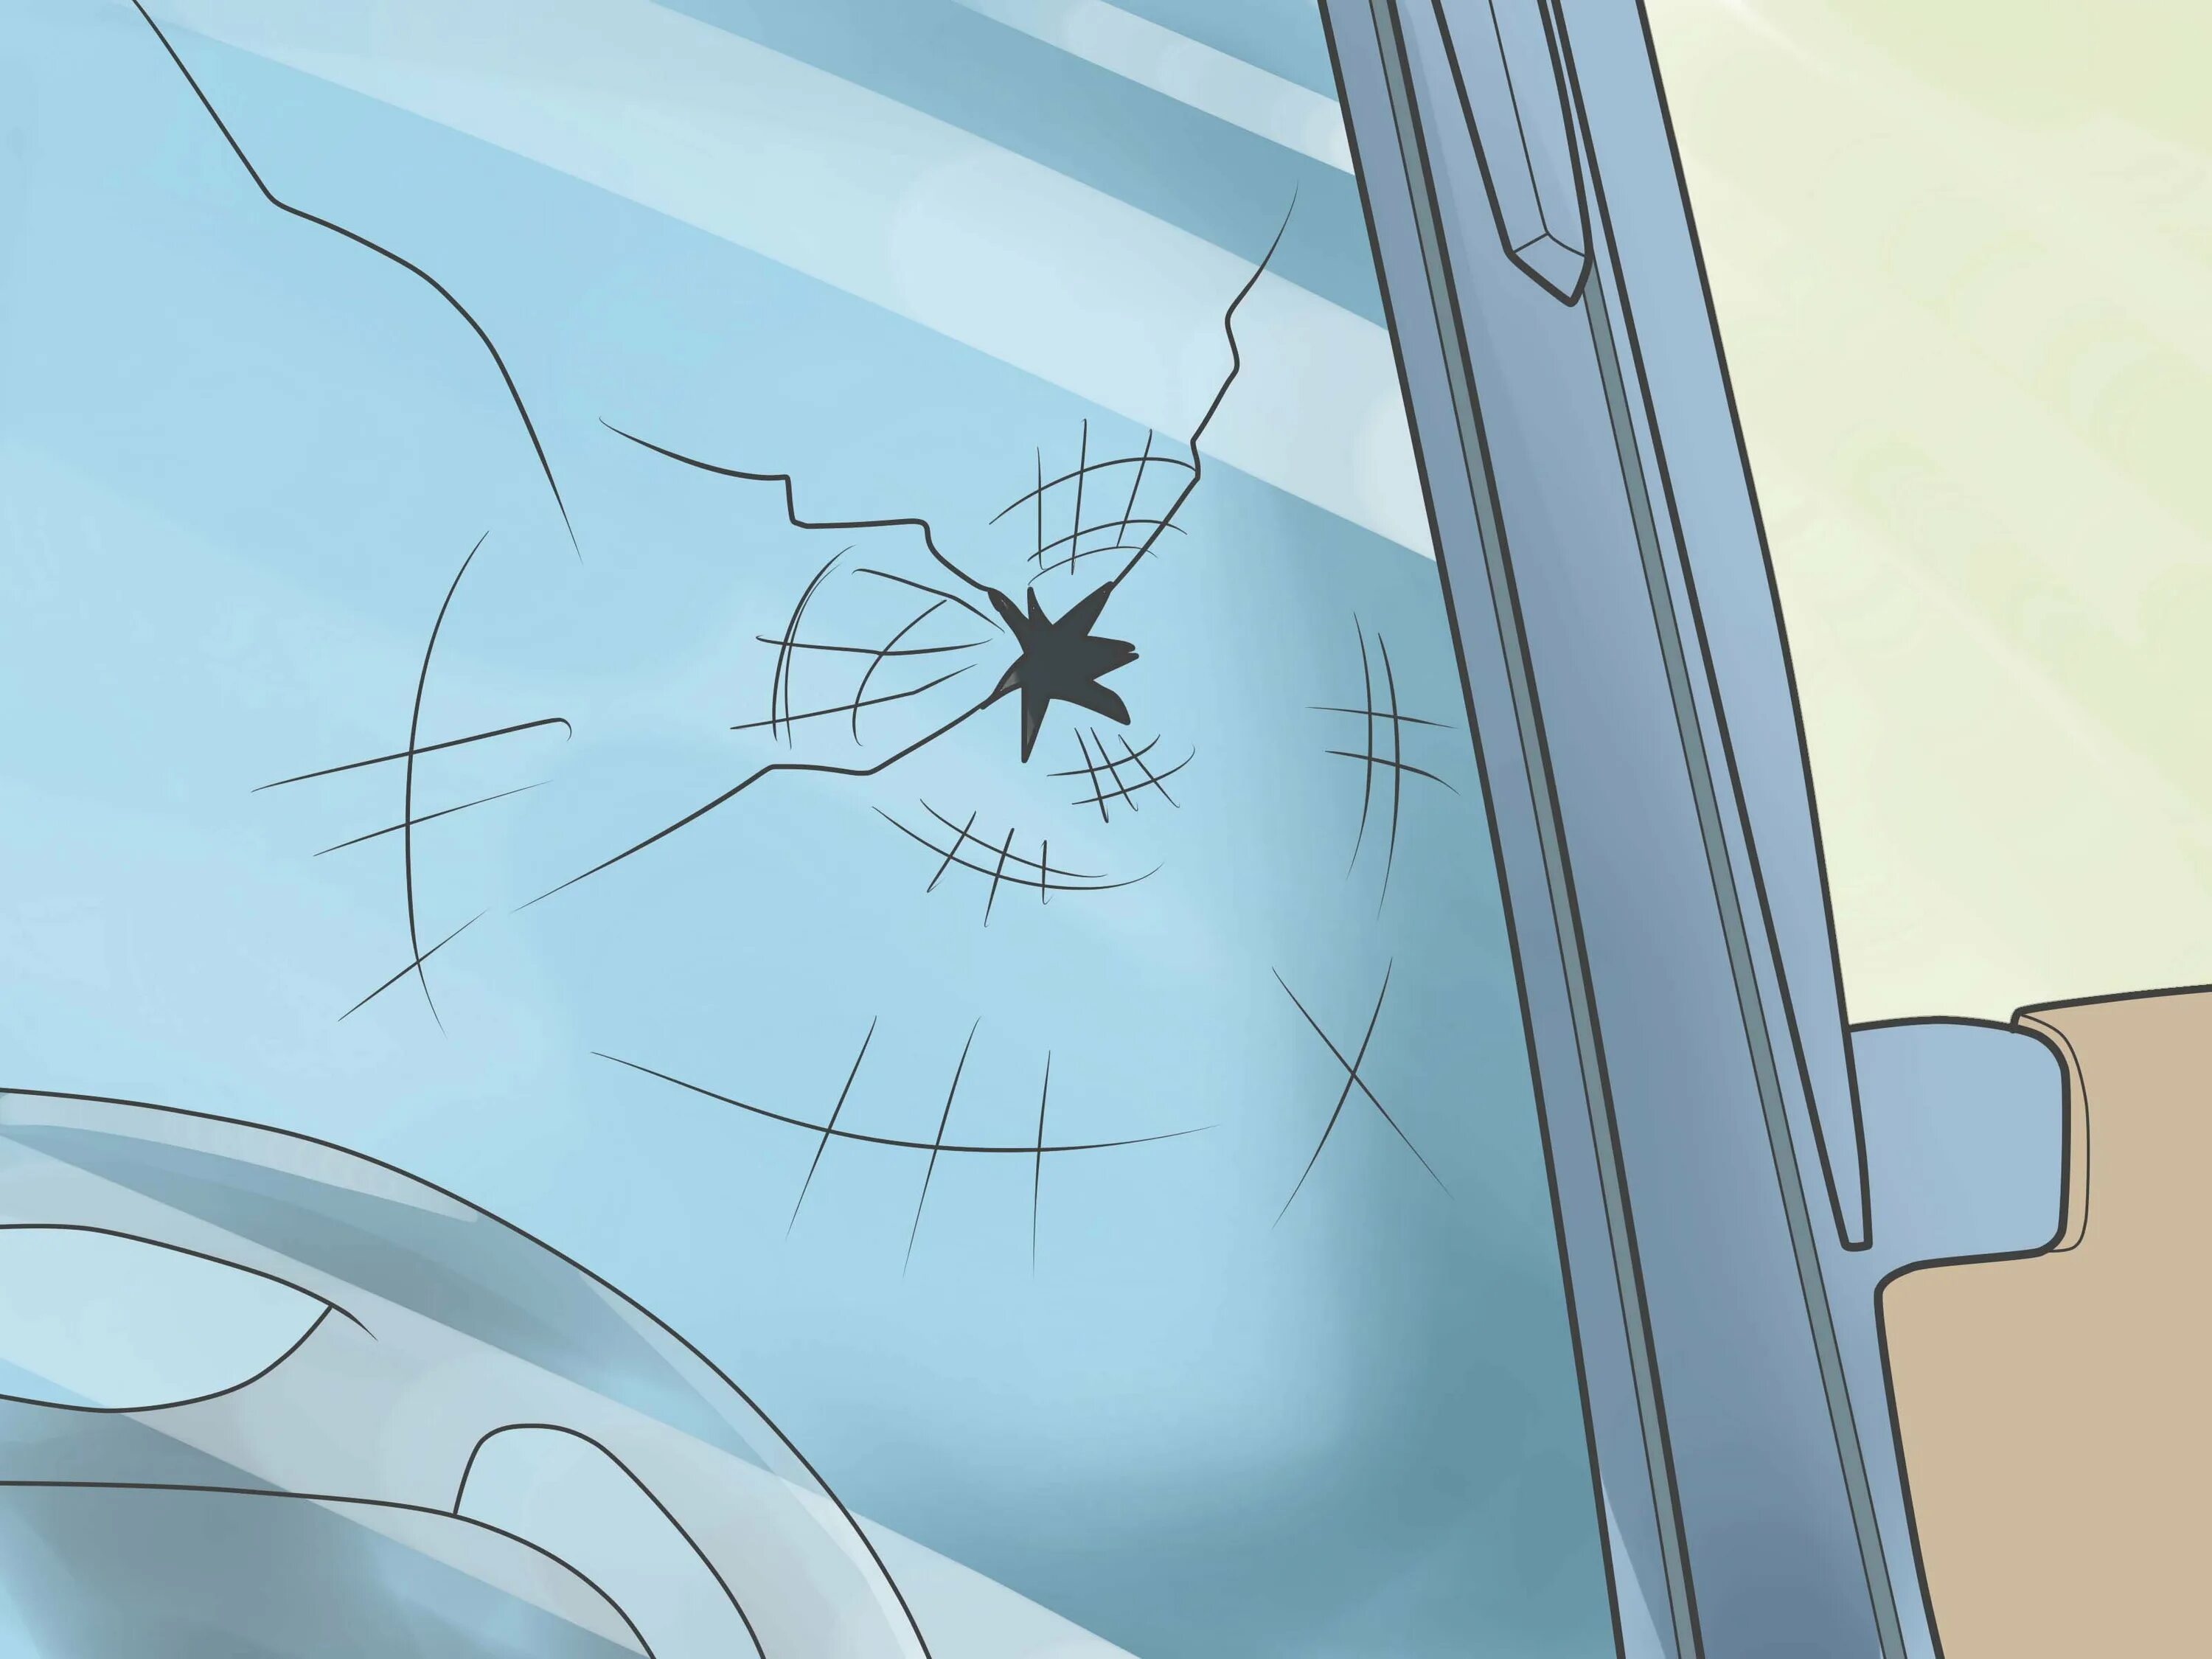 Авто трещины на лобовом стекле. Разбитое стекло. Трещина на лобовом стекле. Разбитое лобовое стекло. Разбитое стекло автомобиля.